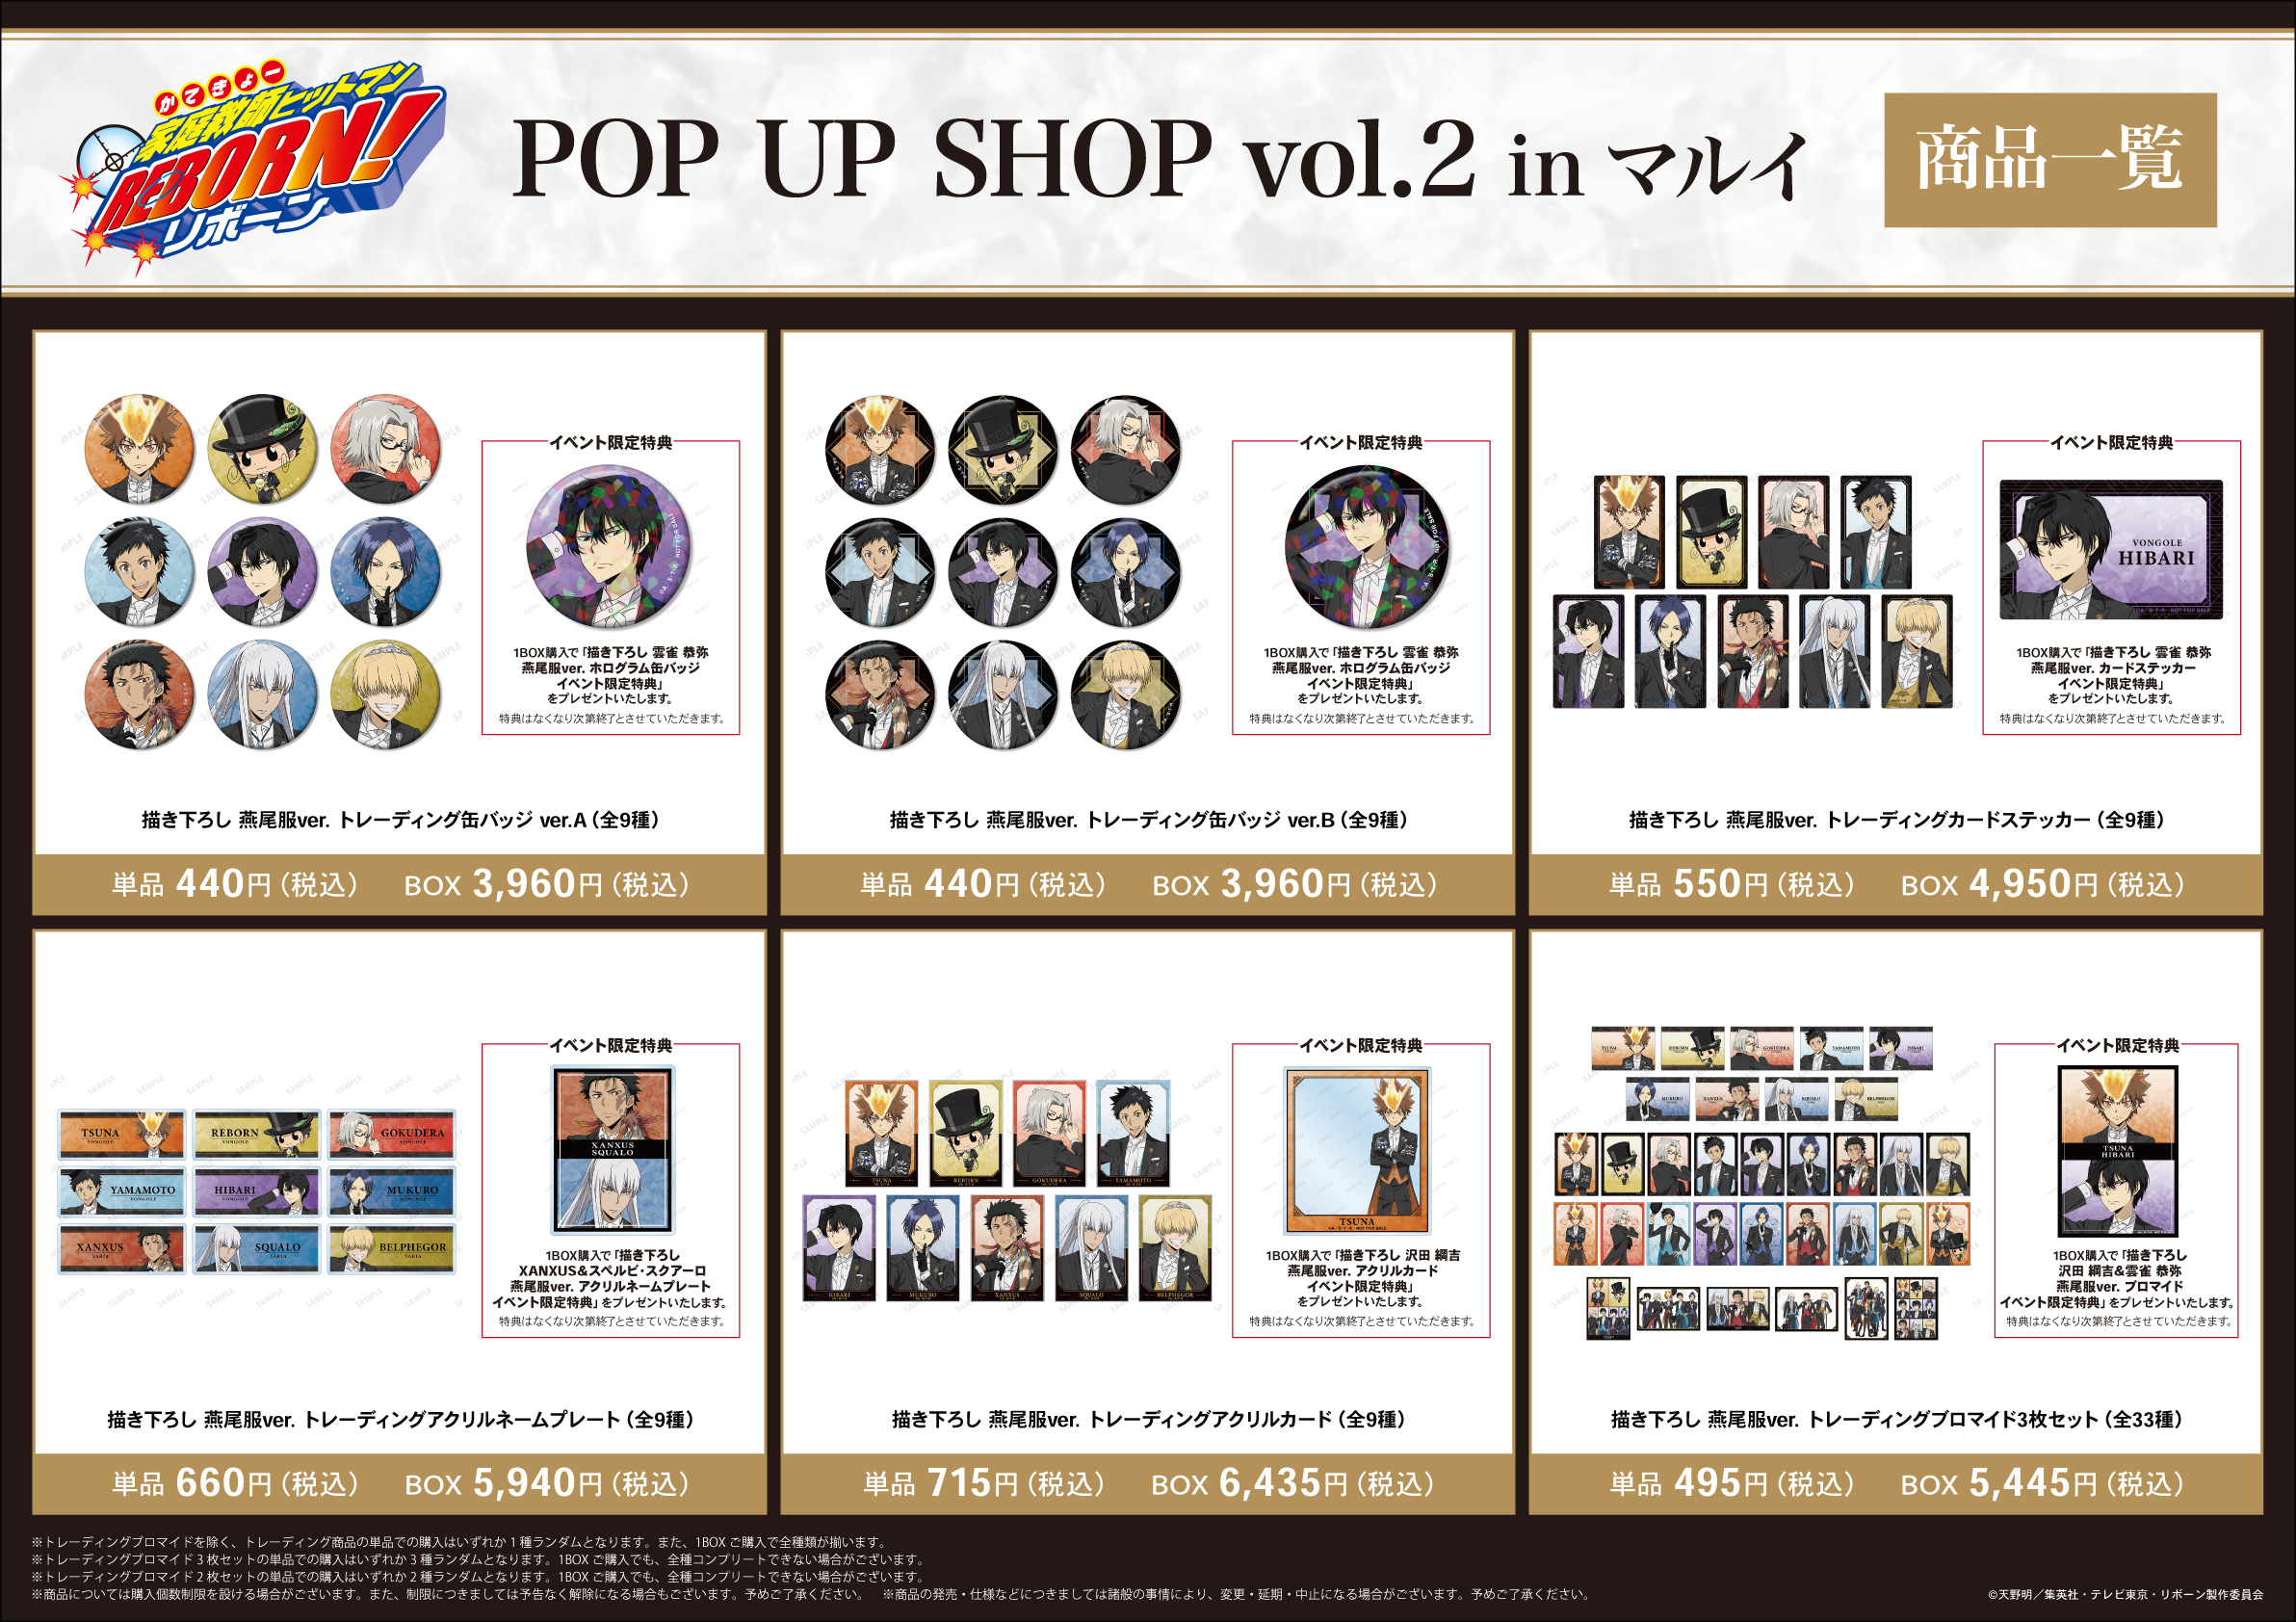 「『家庭教師ヒットマンREBORN!』POP UP SHOP vol.2 in マルイ」イベント先行販売グッズ情報